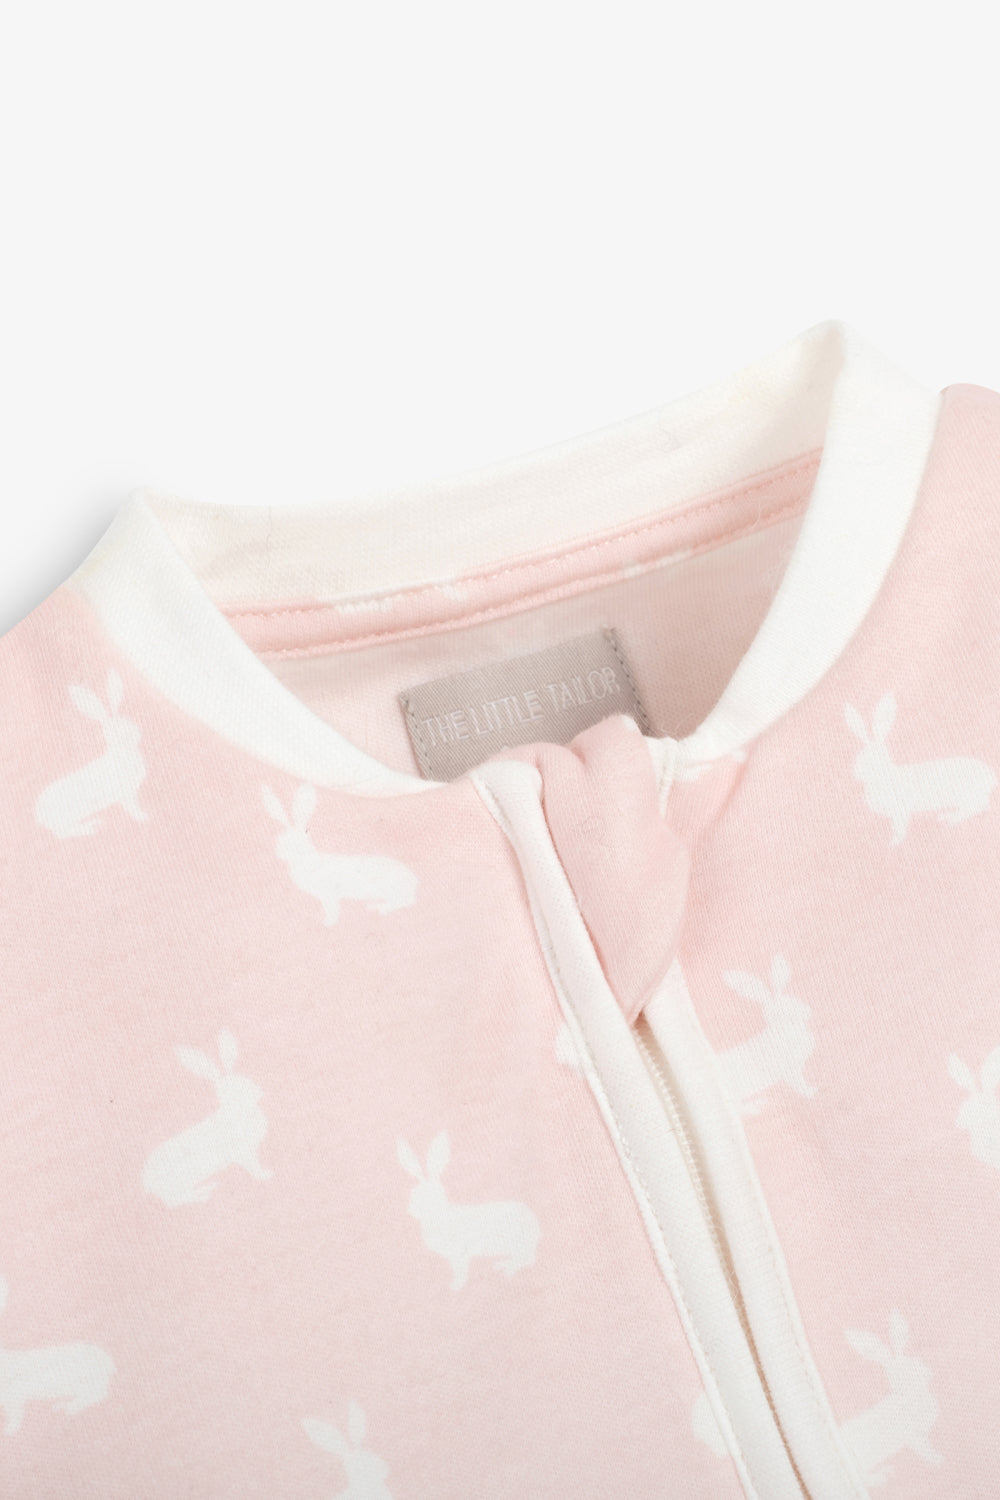 Sleepsuit/Onesie, rose pink hare print